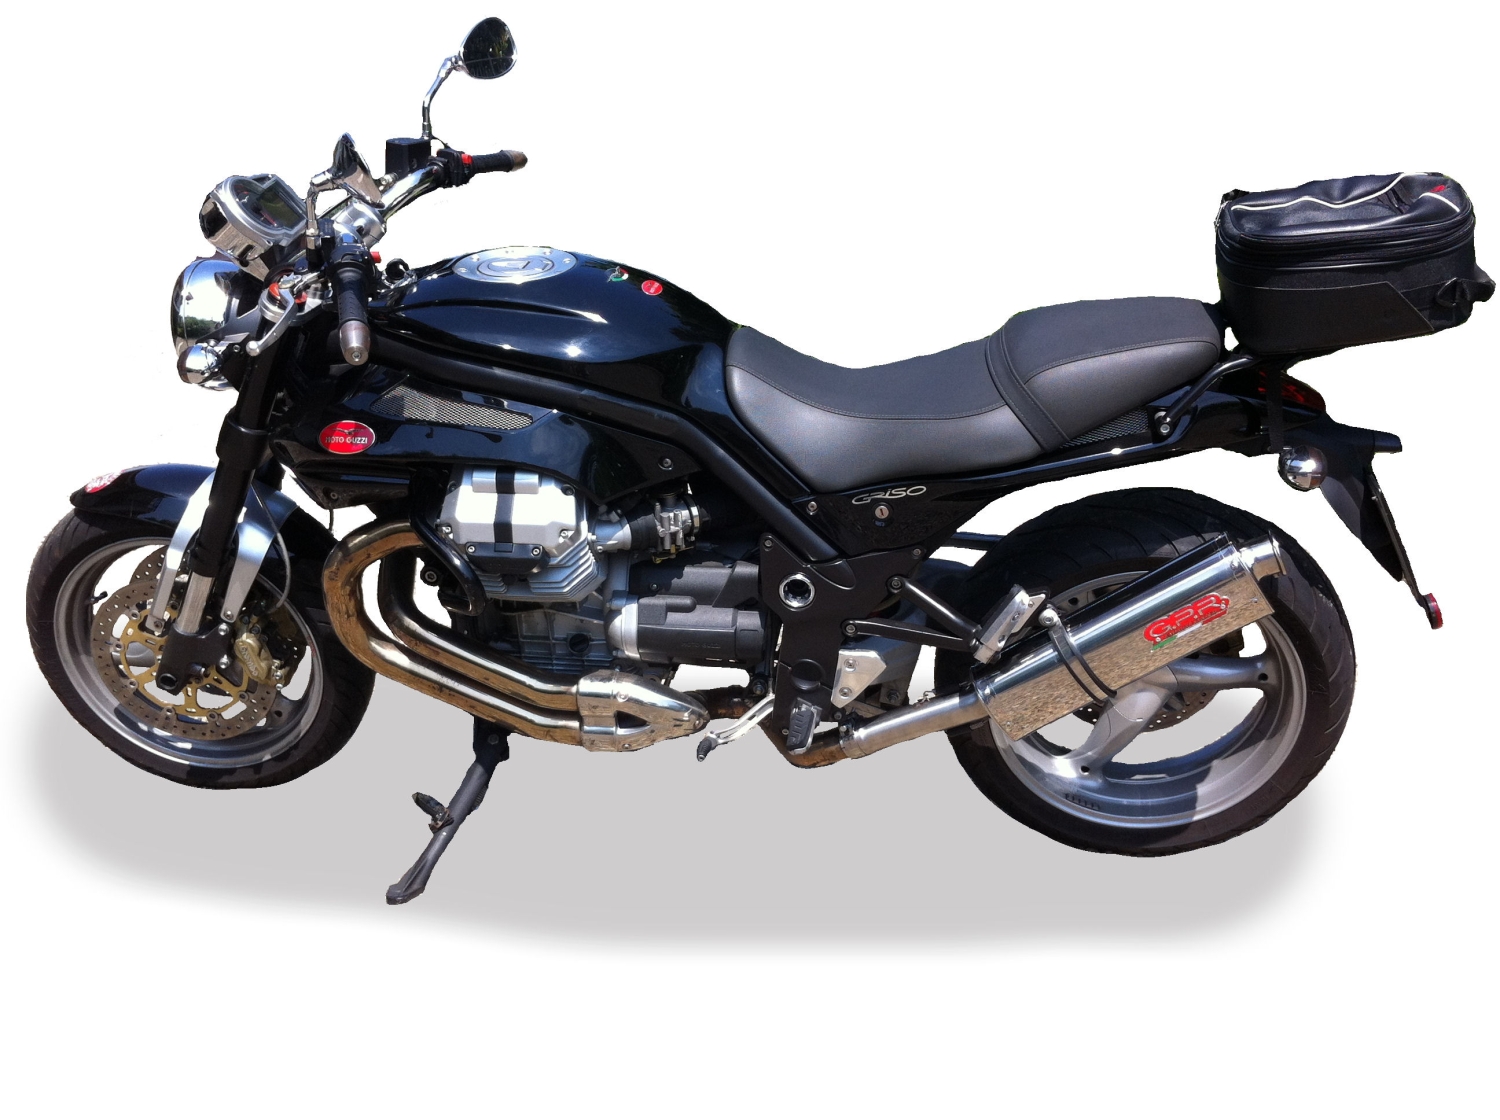 Scarico compatibile con Moto Guzzi Griso 1100 2005-2008, Trioval, Scarico omologato, silenziatore con db killer estraibile e raccordo specifico